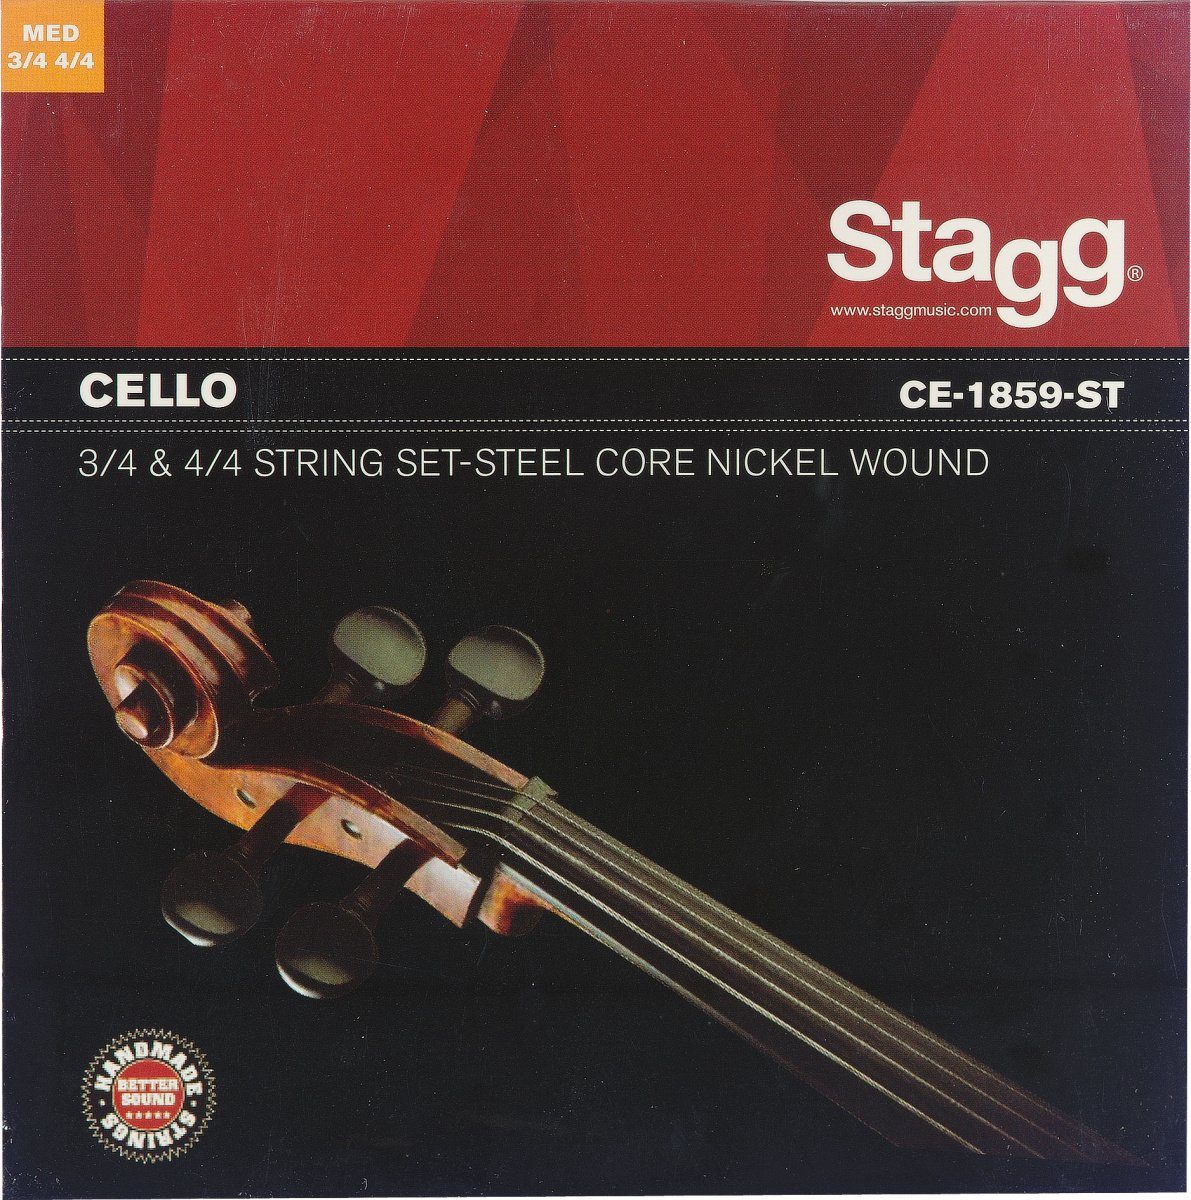 Stagg Cello Cellosaiten für 3/4 und 4/4 Cello mittel